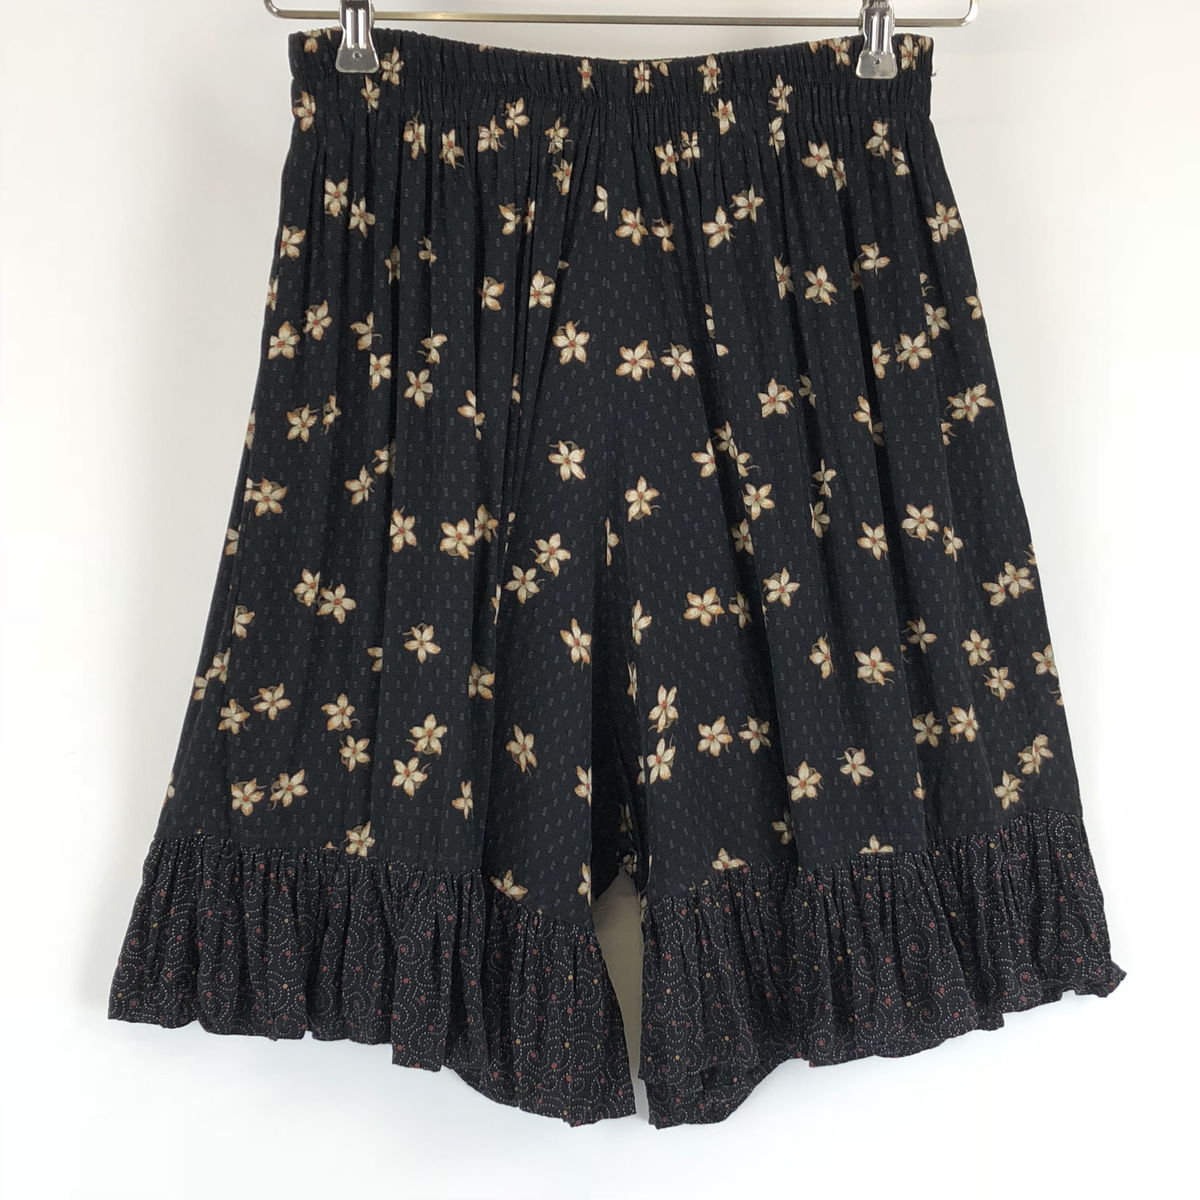 【古着】 Anna Bella design キュロットスカート 花柄 切替えデザイン ウエストゴム ブラック系 レディースFREE n009985